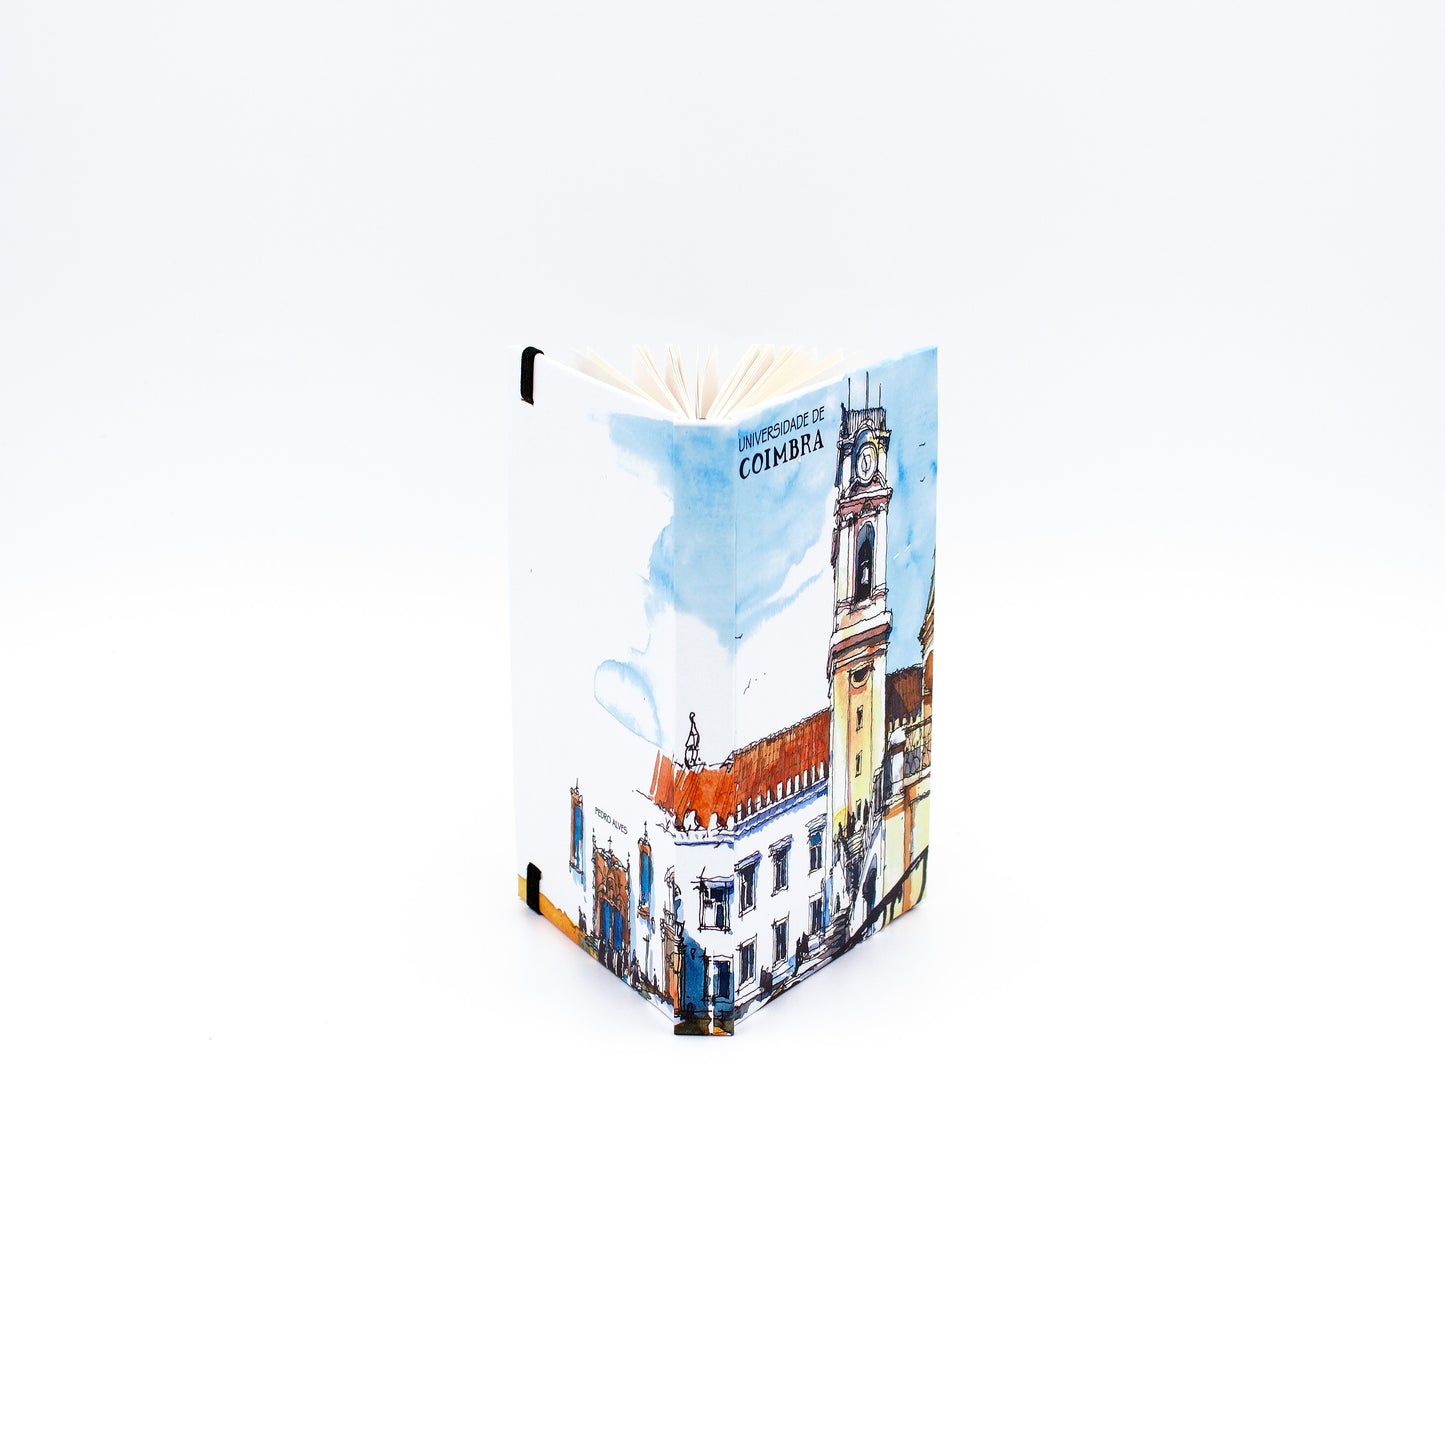 Bloco de Notas A6, com folhas lisas e uma belíssima ilustração da Torre da Universidade de Coimbra, criada pelo talentoso artista Pedro Alves.&nbsp;